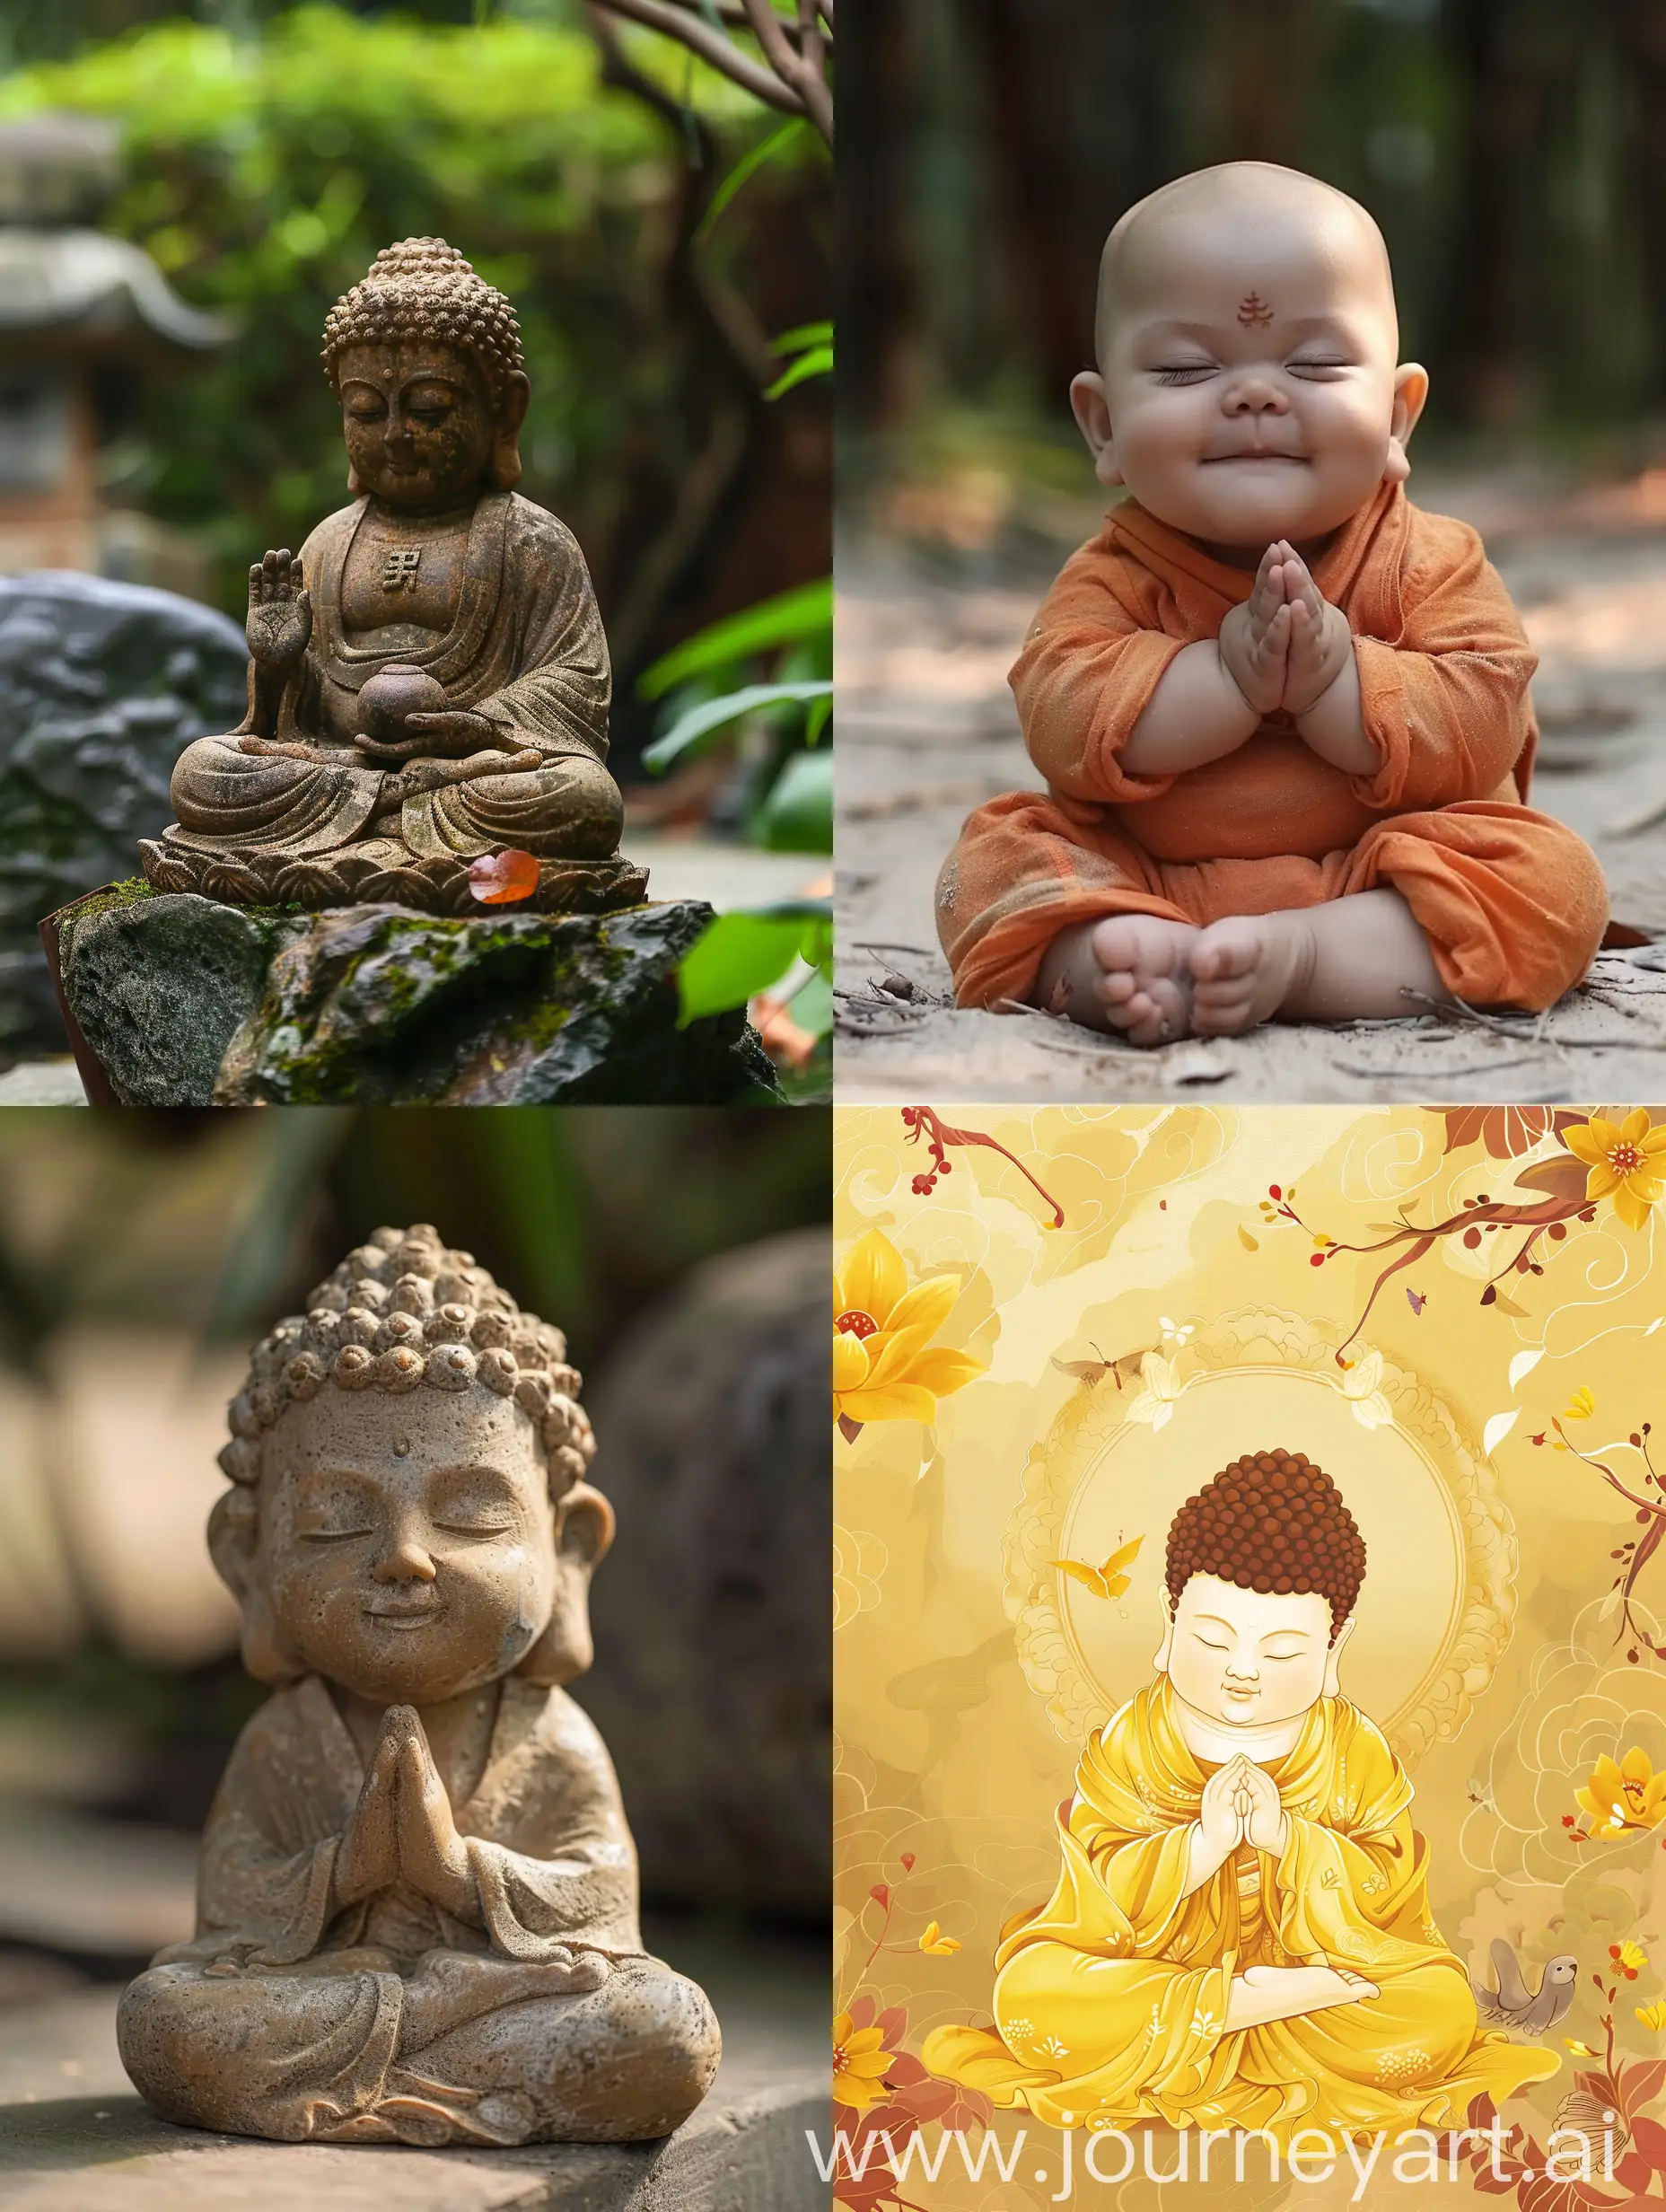 Buddha-Embracing-Joyful-Childhood-Moments